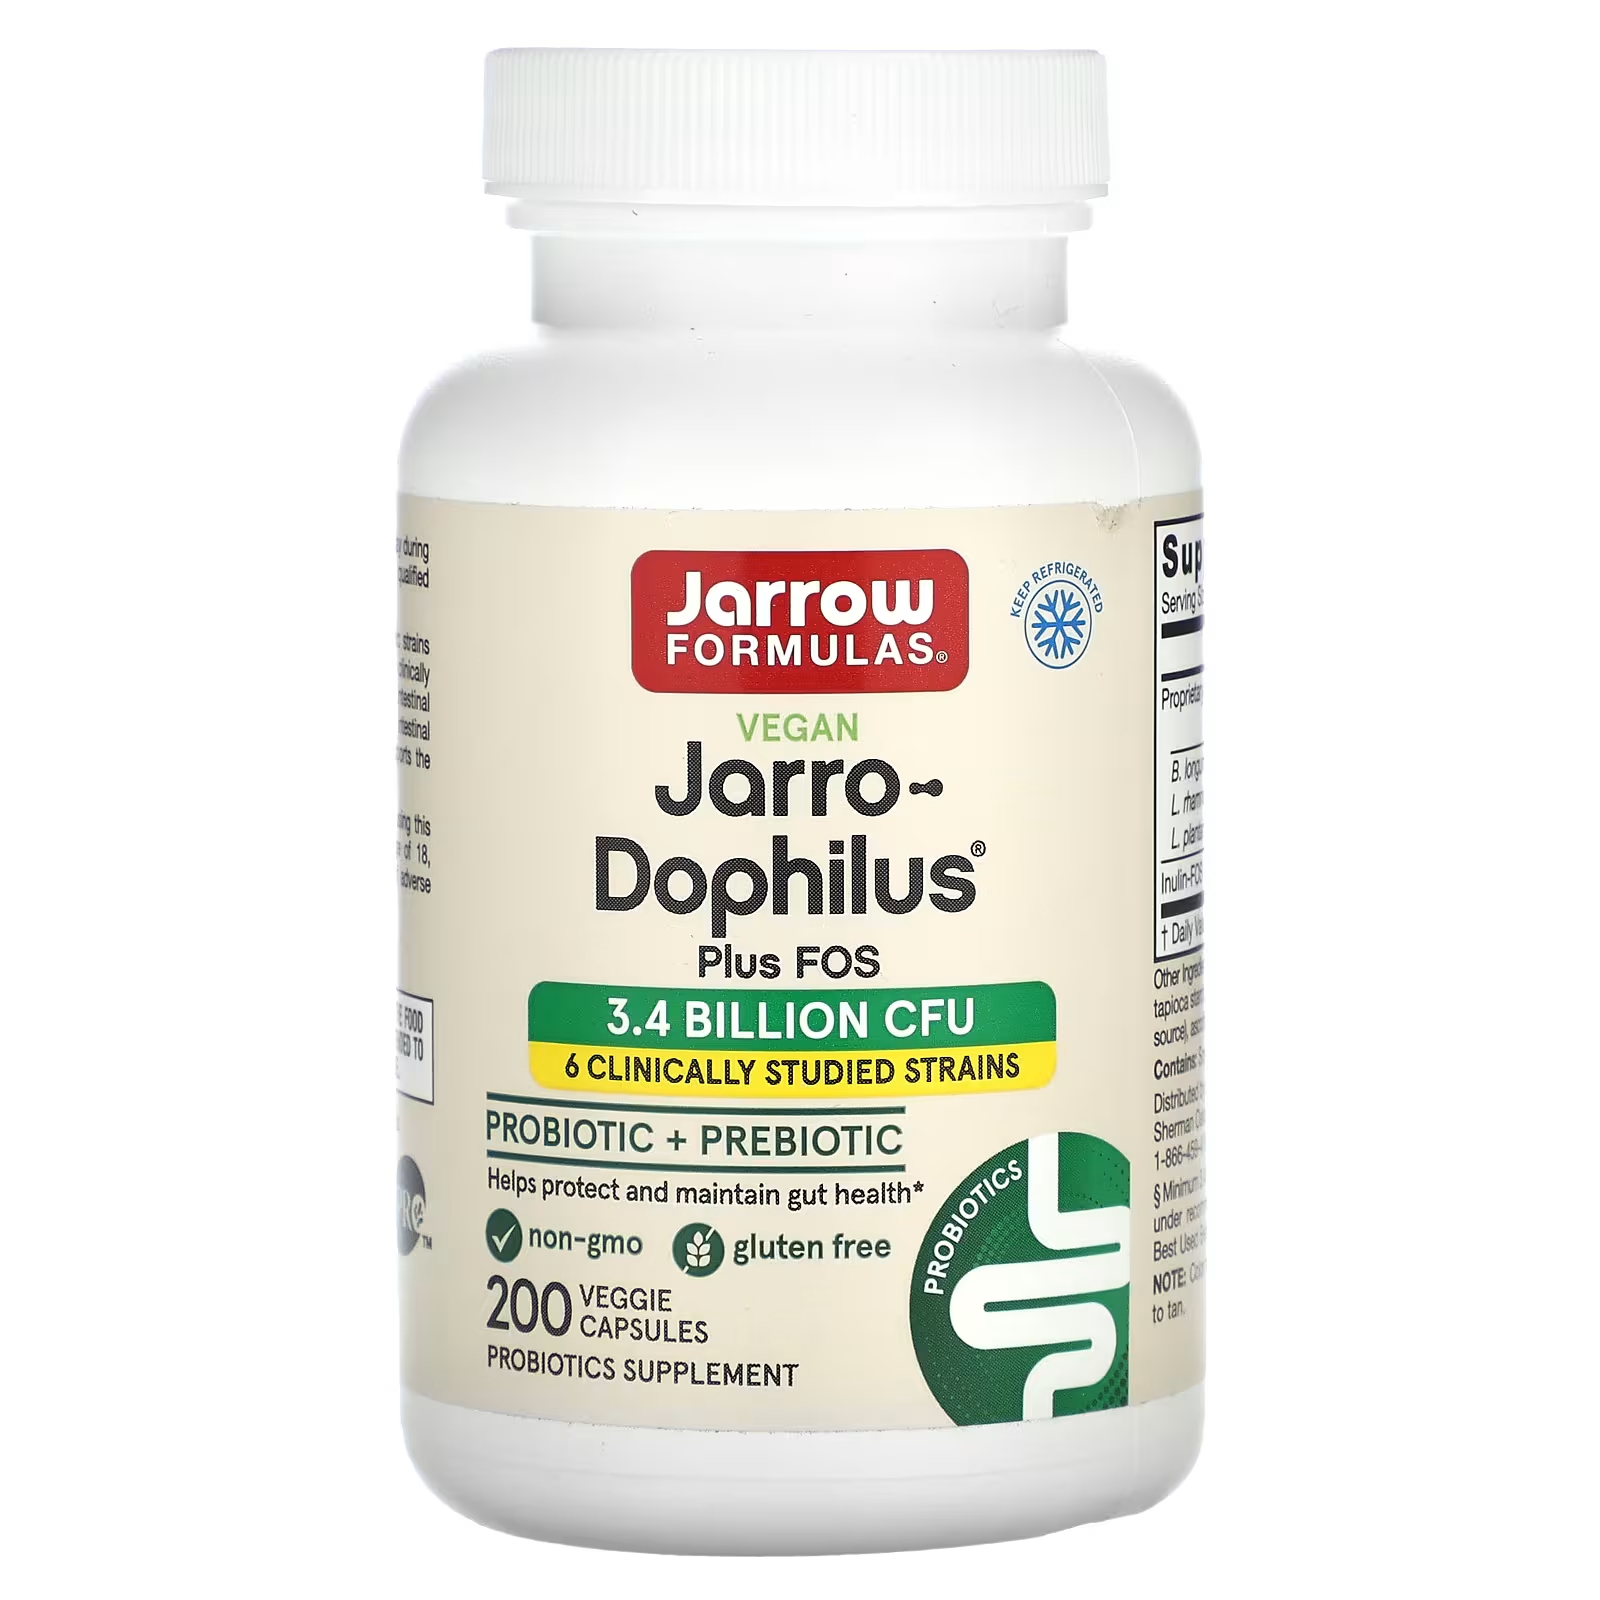 пробиотики для детей jarrow formulas jarro dophilus baby 3 billion cfu 60 г Пробиотики + пребиотики Jarrow Formulas Jarro-Dophilus Plus FOS, 200 растительных капсул